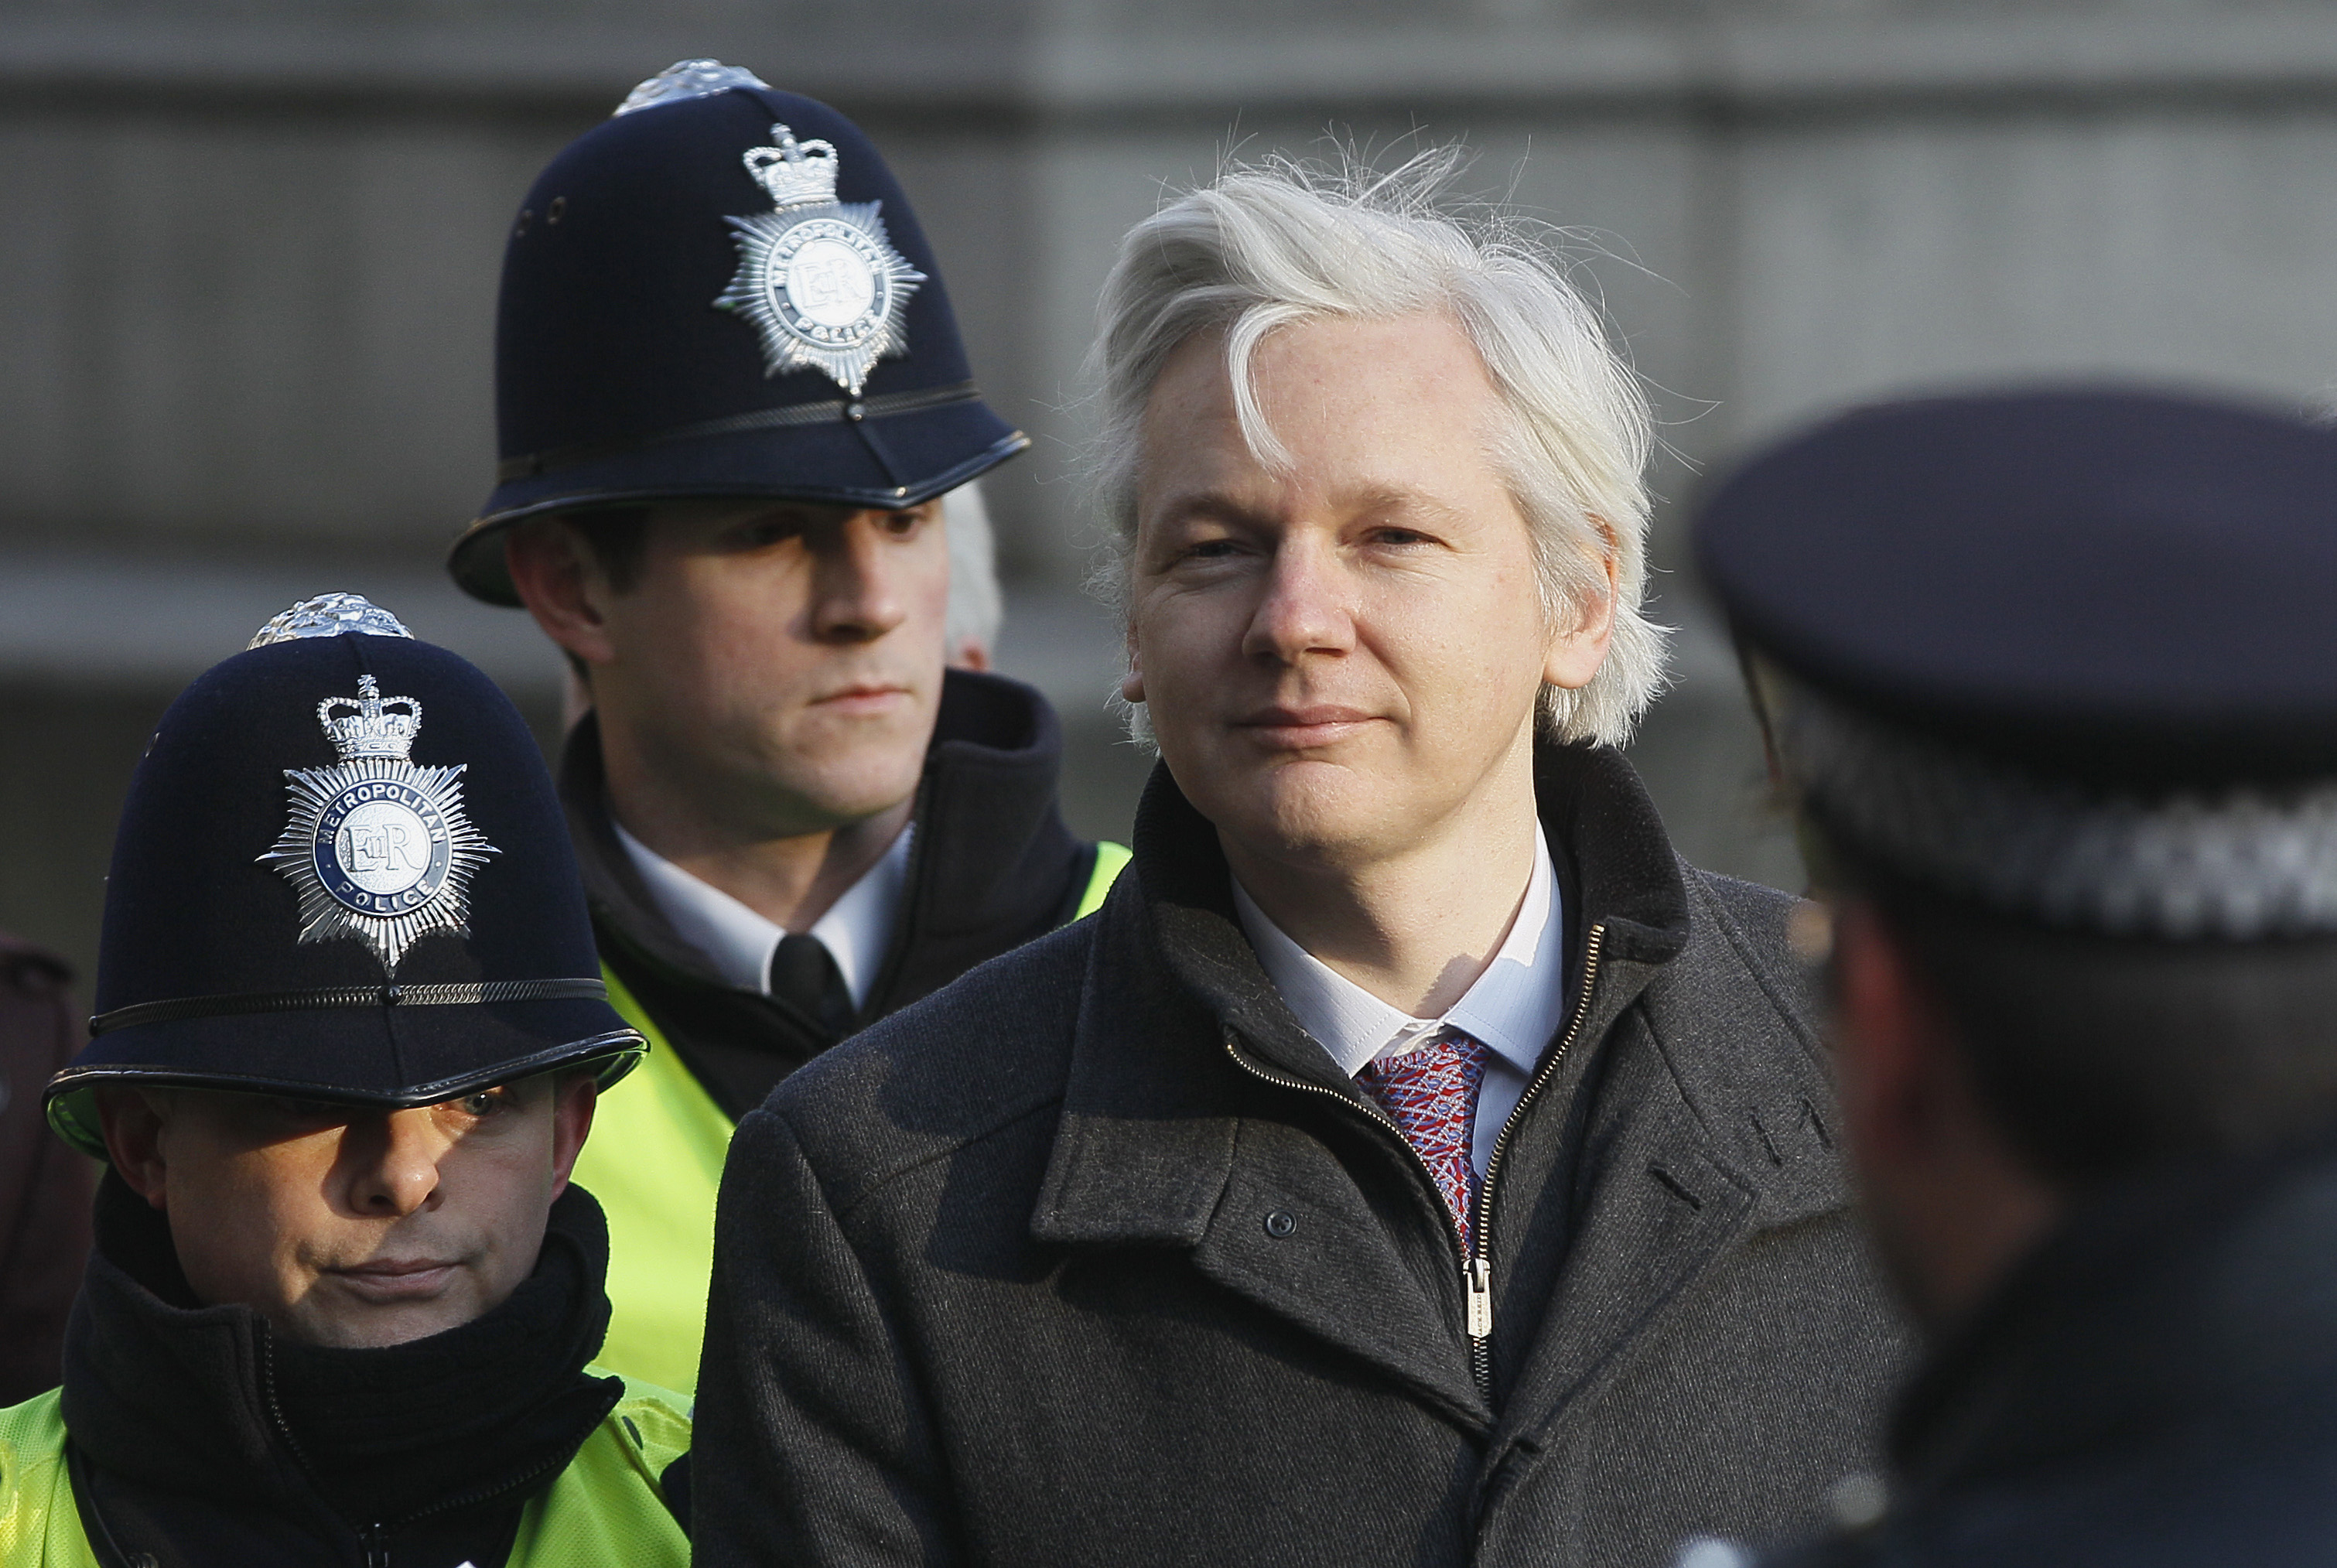 Besked om utlämning av Julian Assange till Sverige meddelas inom kort.